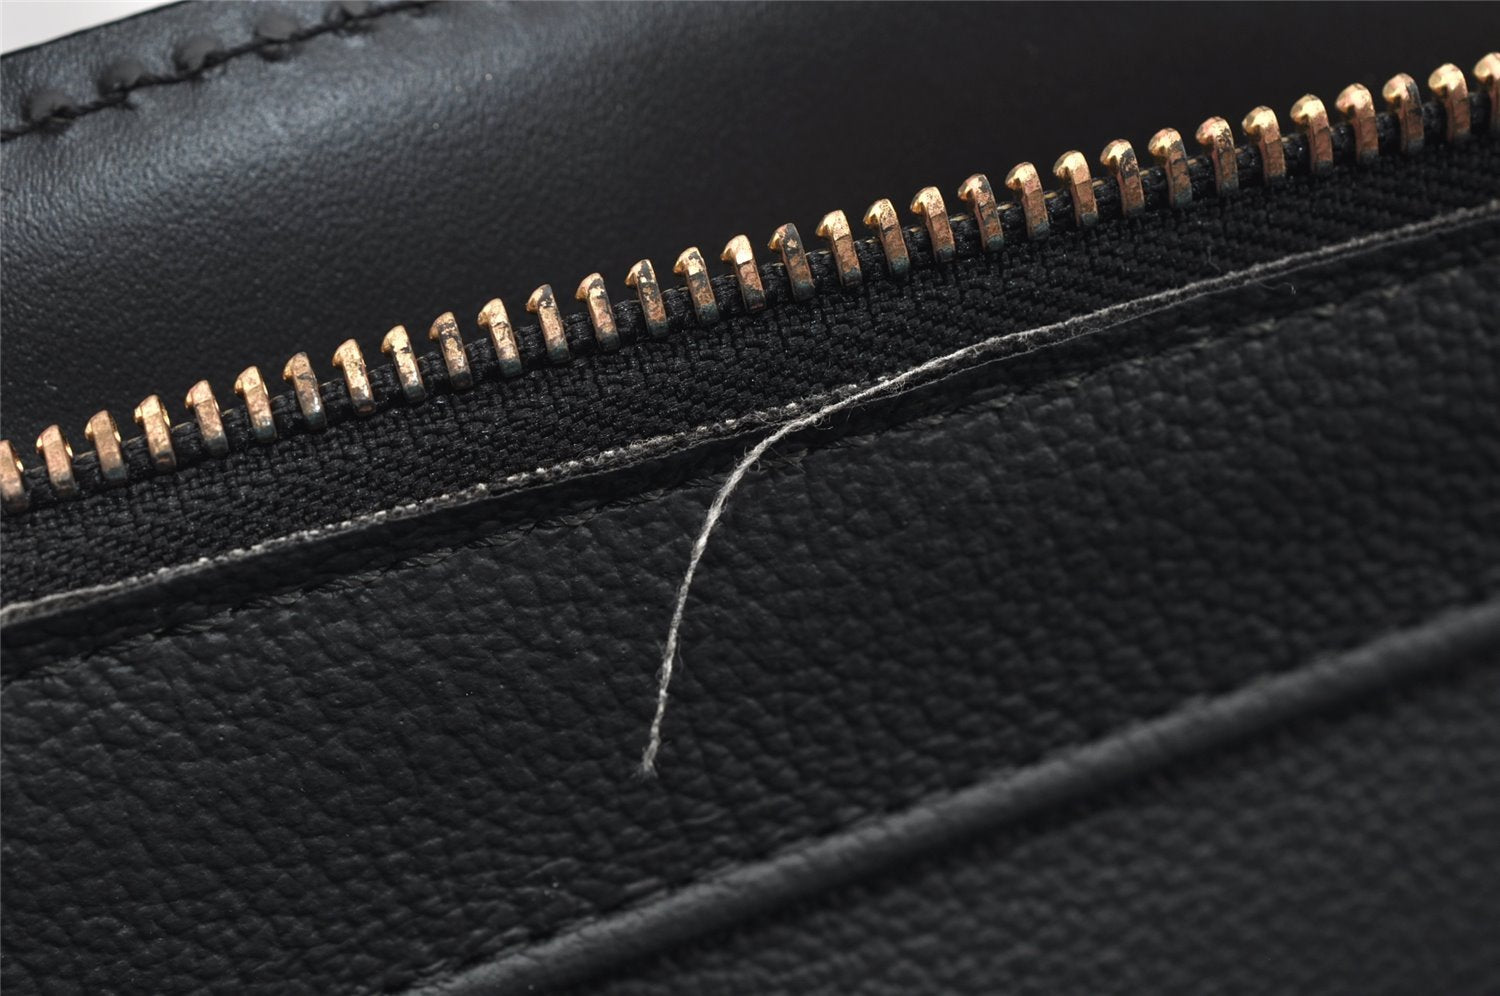 Authentic Louis Vuitton Epi Riviera Hand Bag Black M48182 LV 9967J